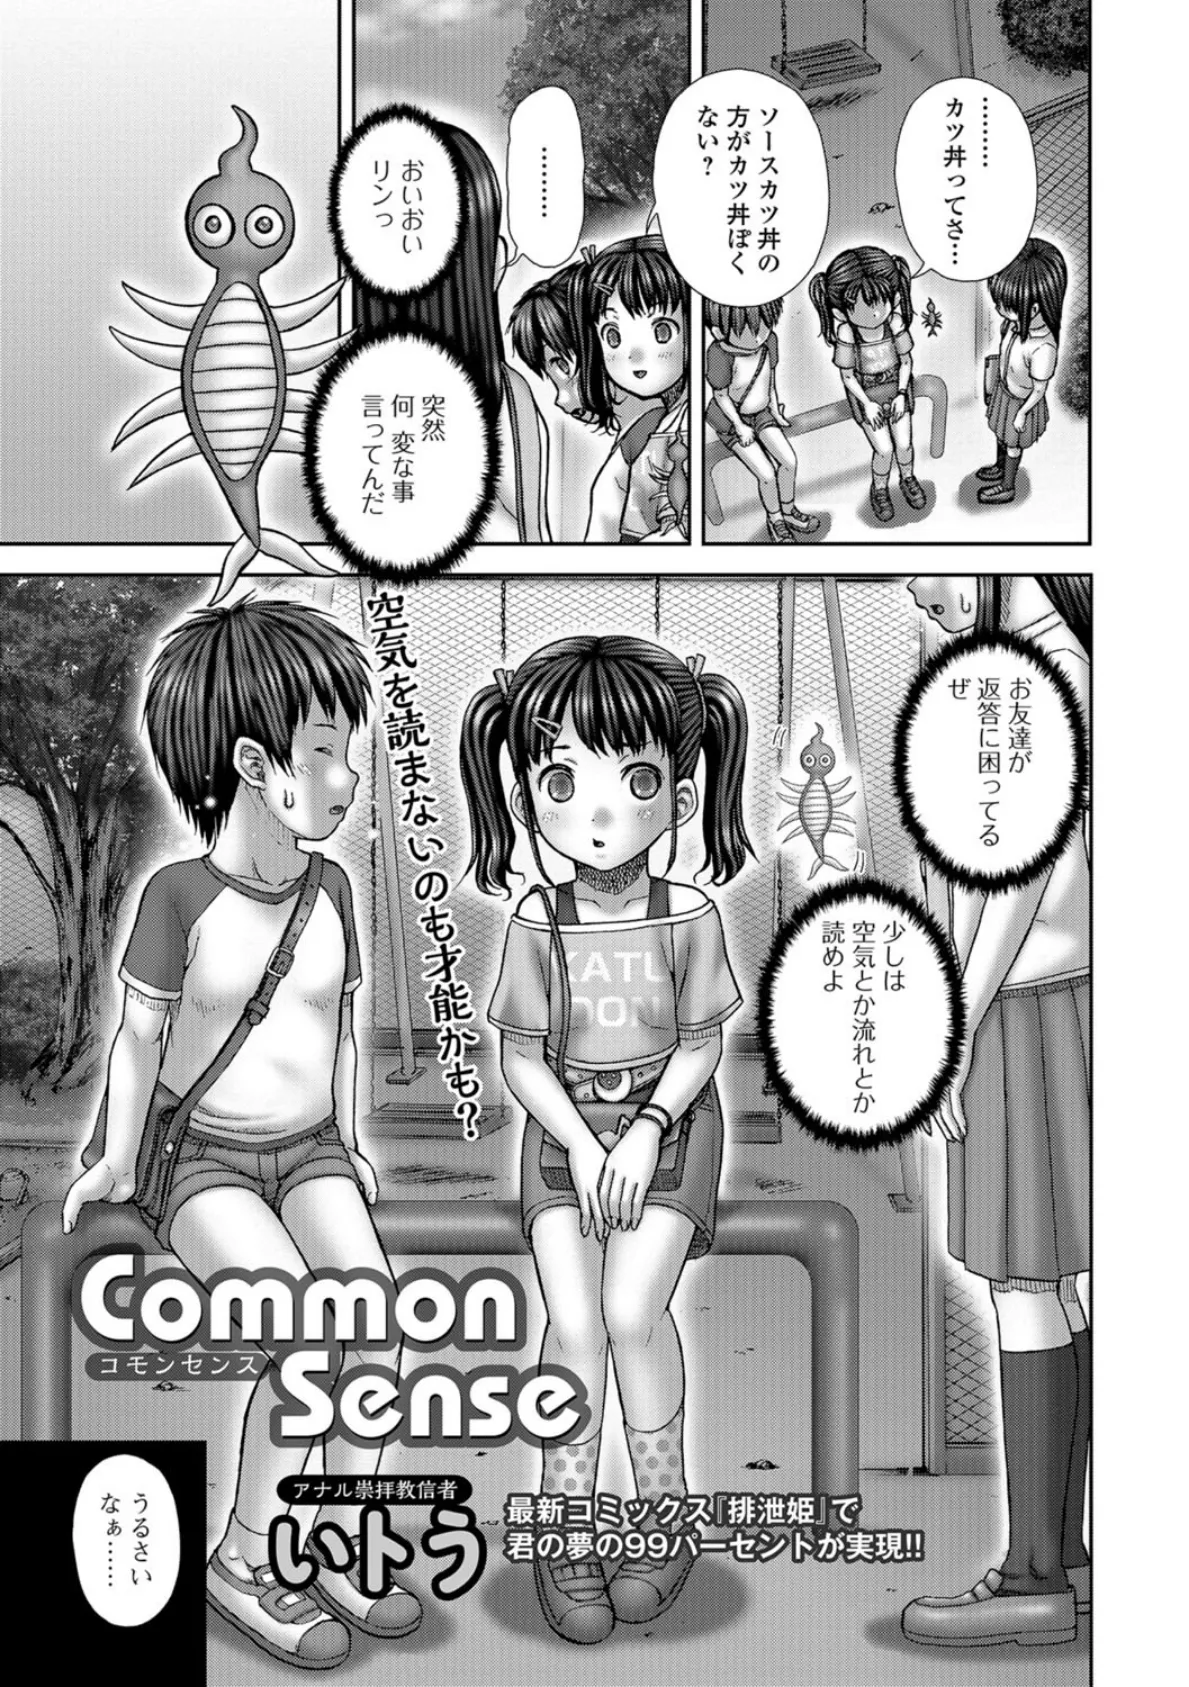 Common Sense 〜コモンセンス〜